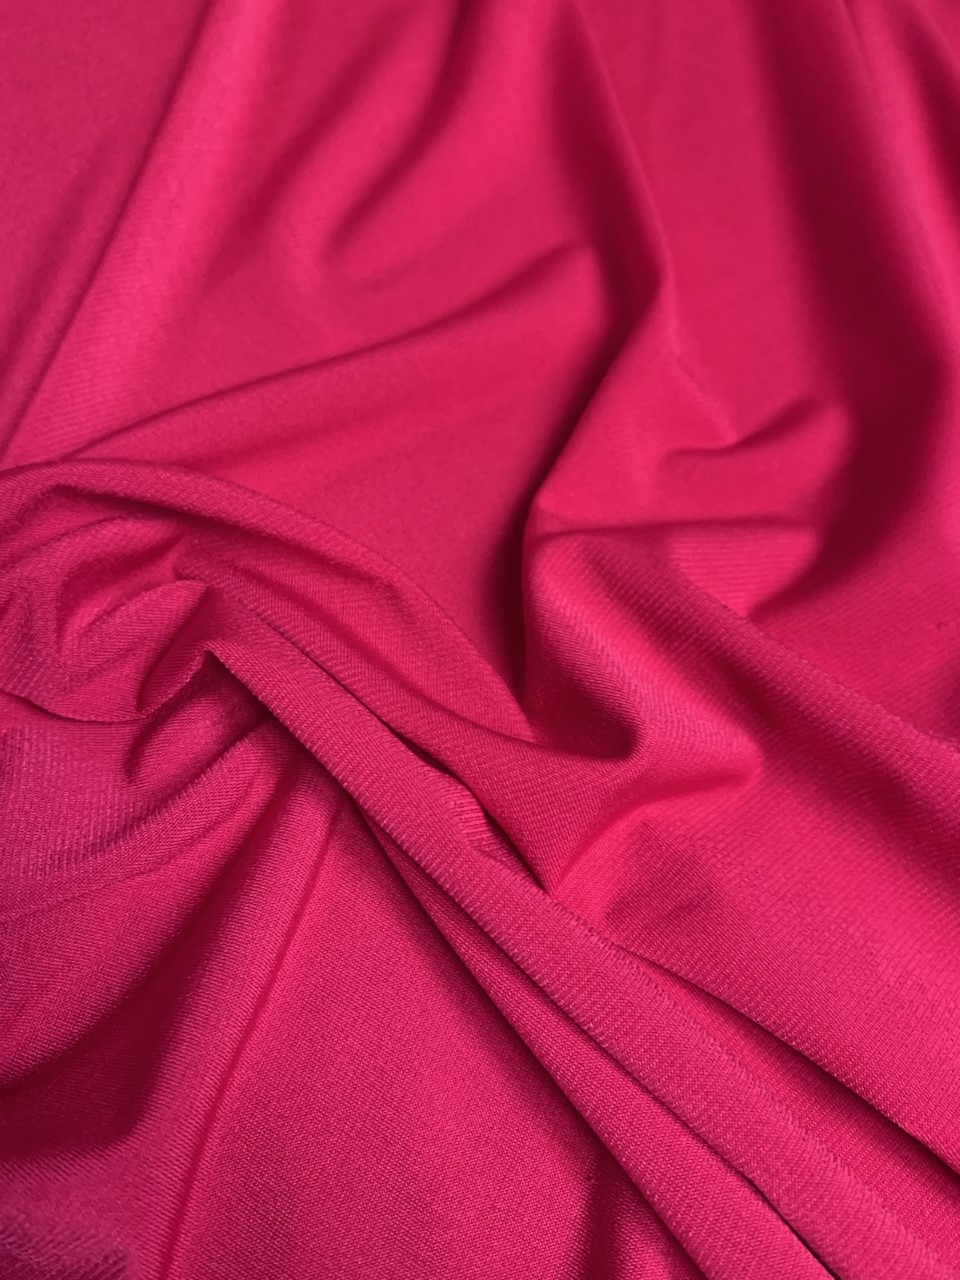 58/60" Fuchsia ITY Knit Jersey Fabric By The Yard